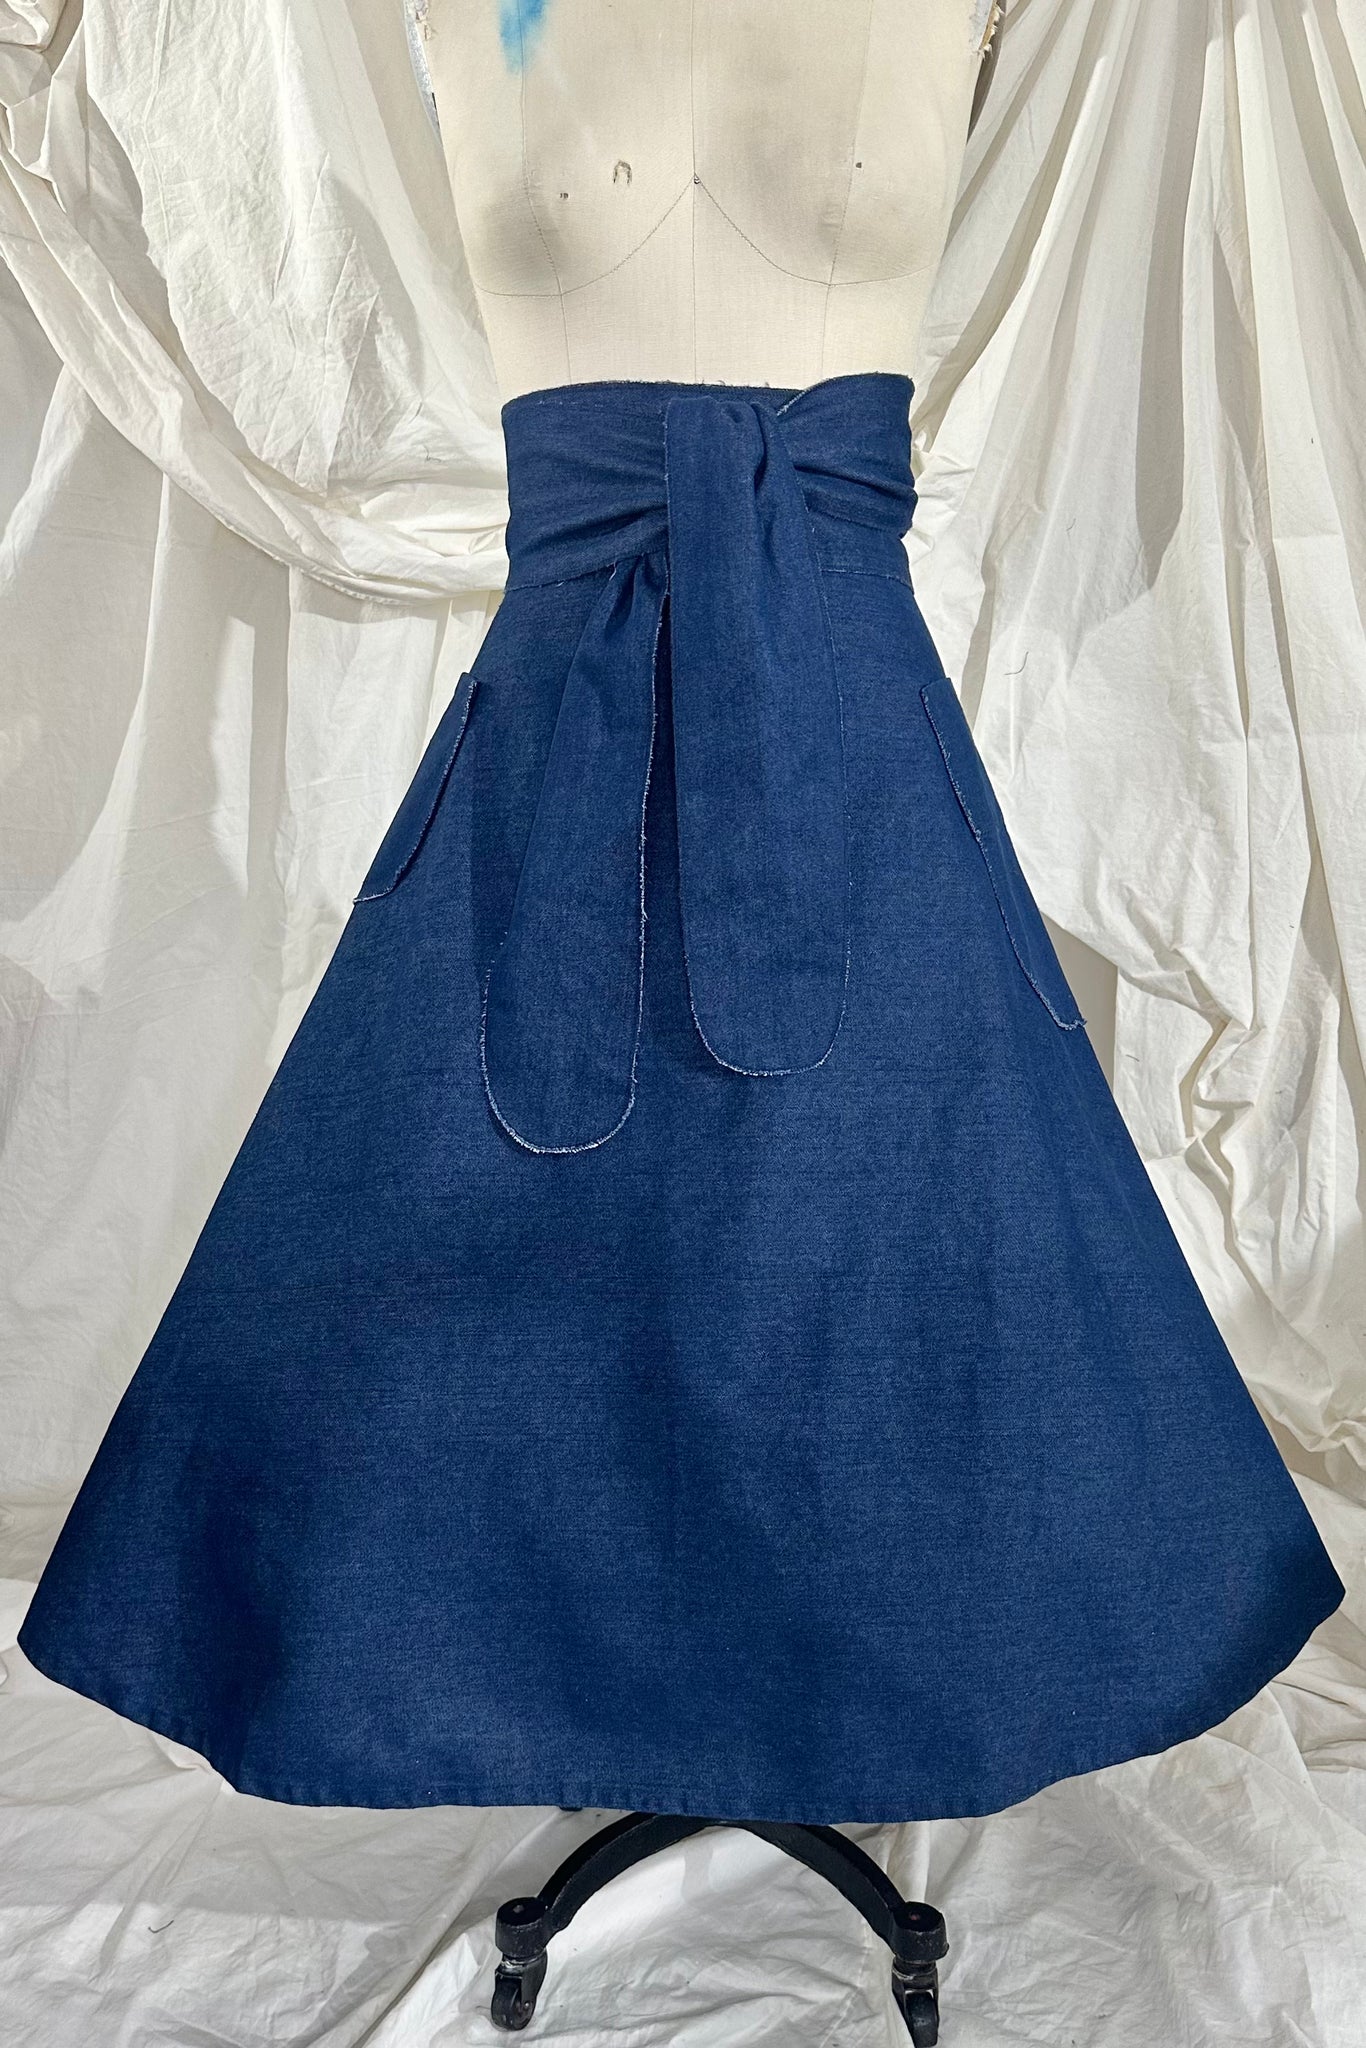 The Bell Bottom Wrap Skirt